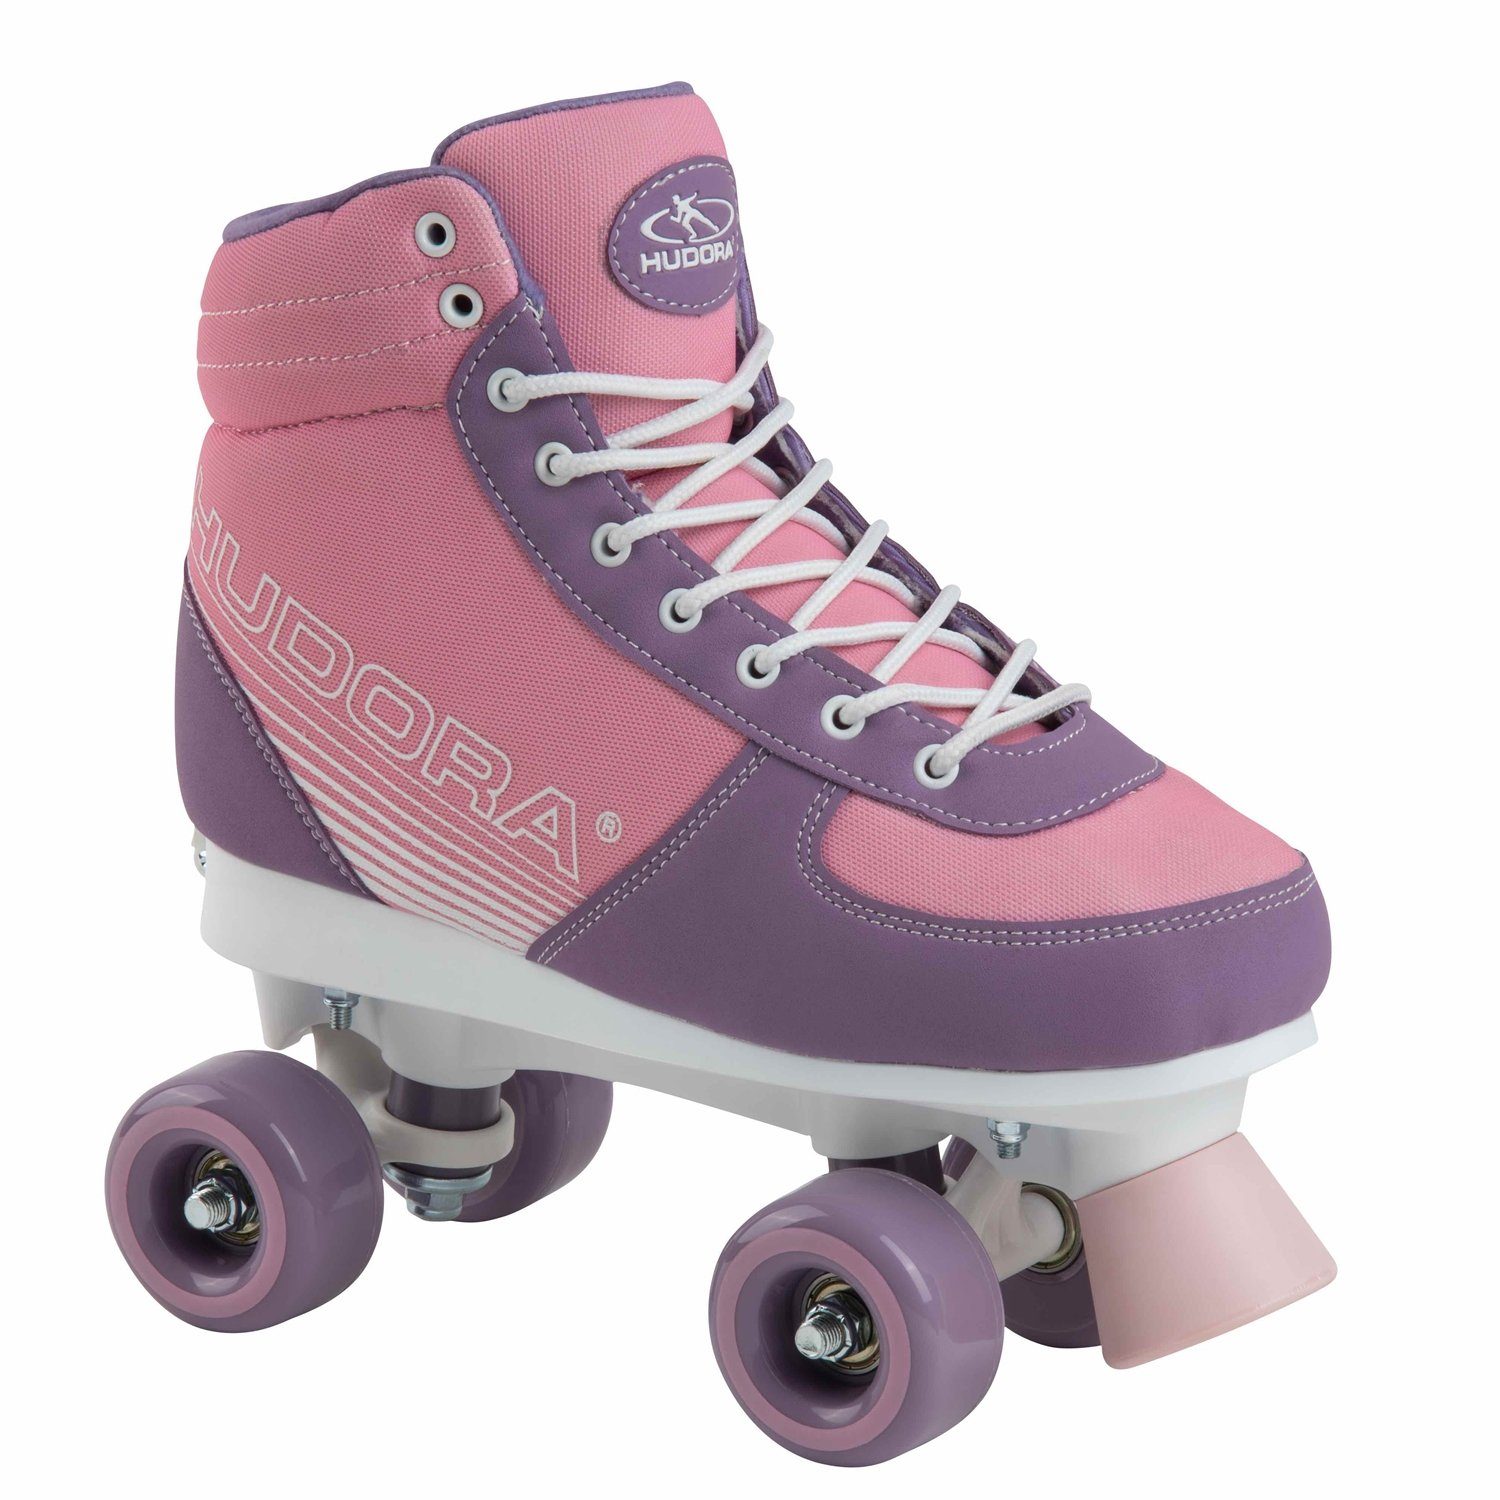 Hudora Scooter 13126 Inline Skates Advanced pink Blush Gr:35-38 | Cityroller